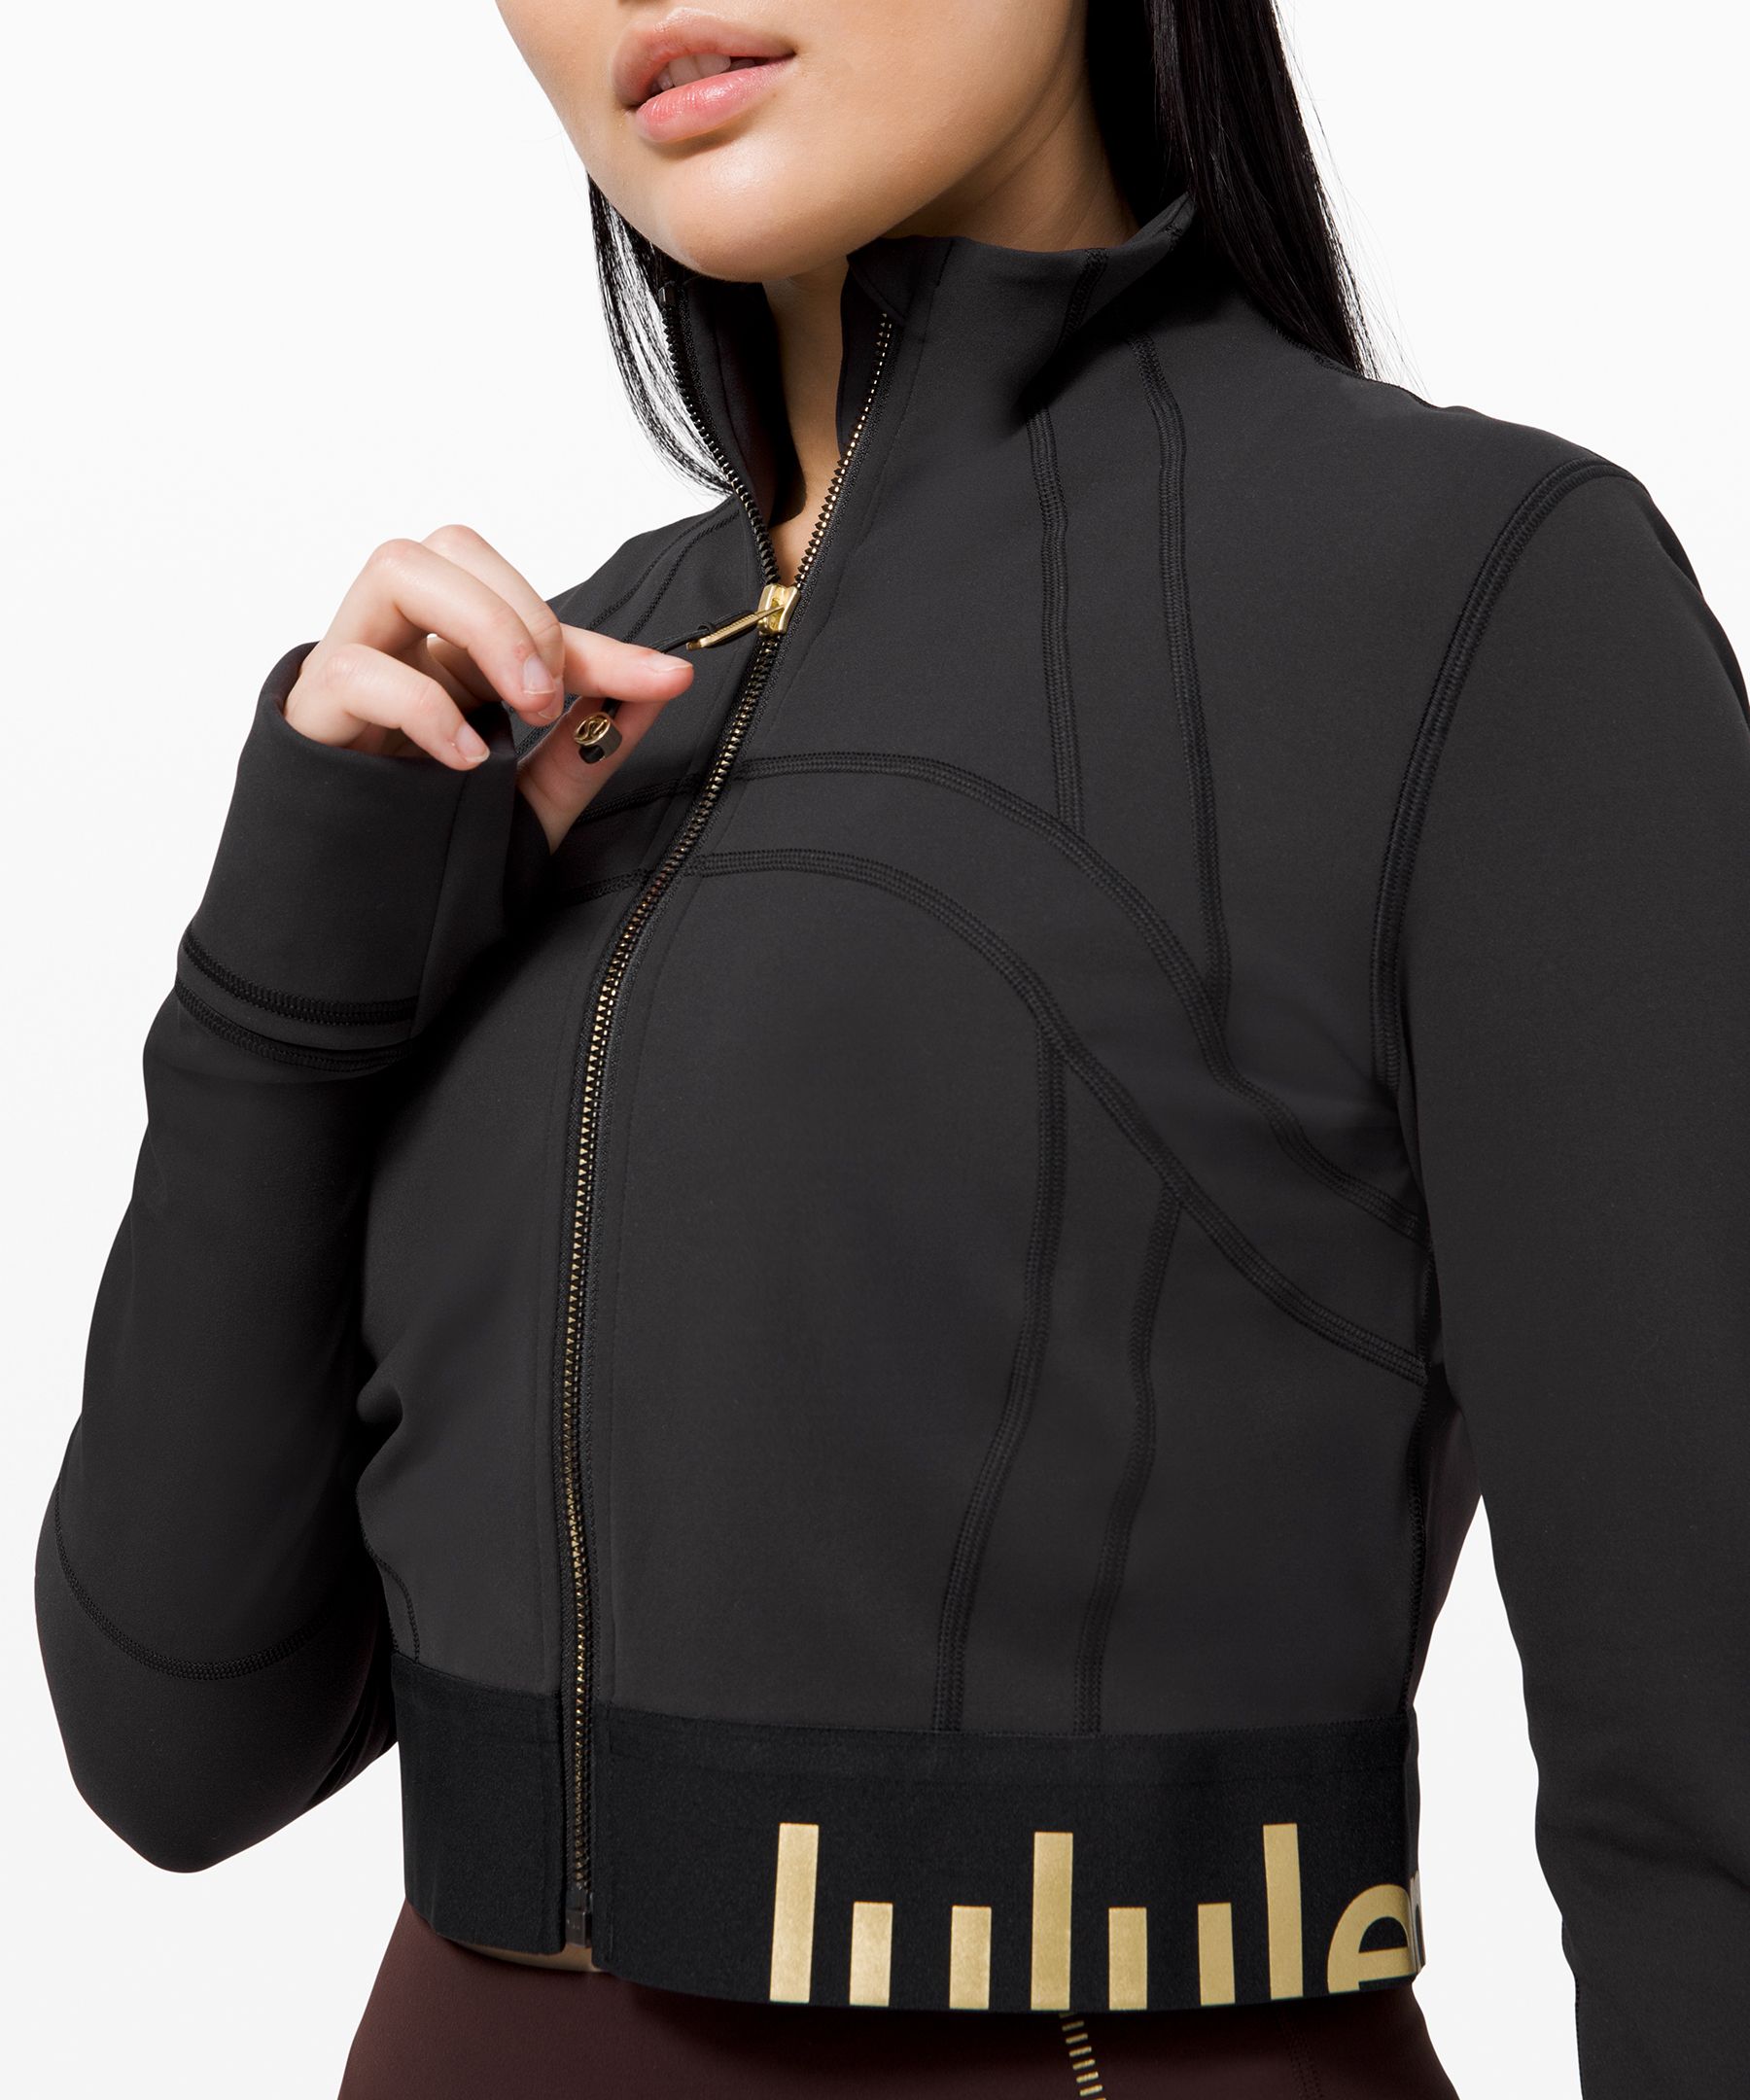 lululemon define jacket